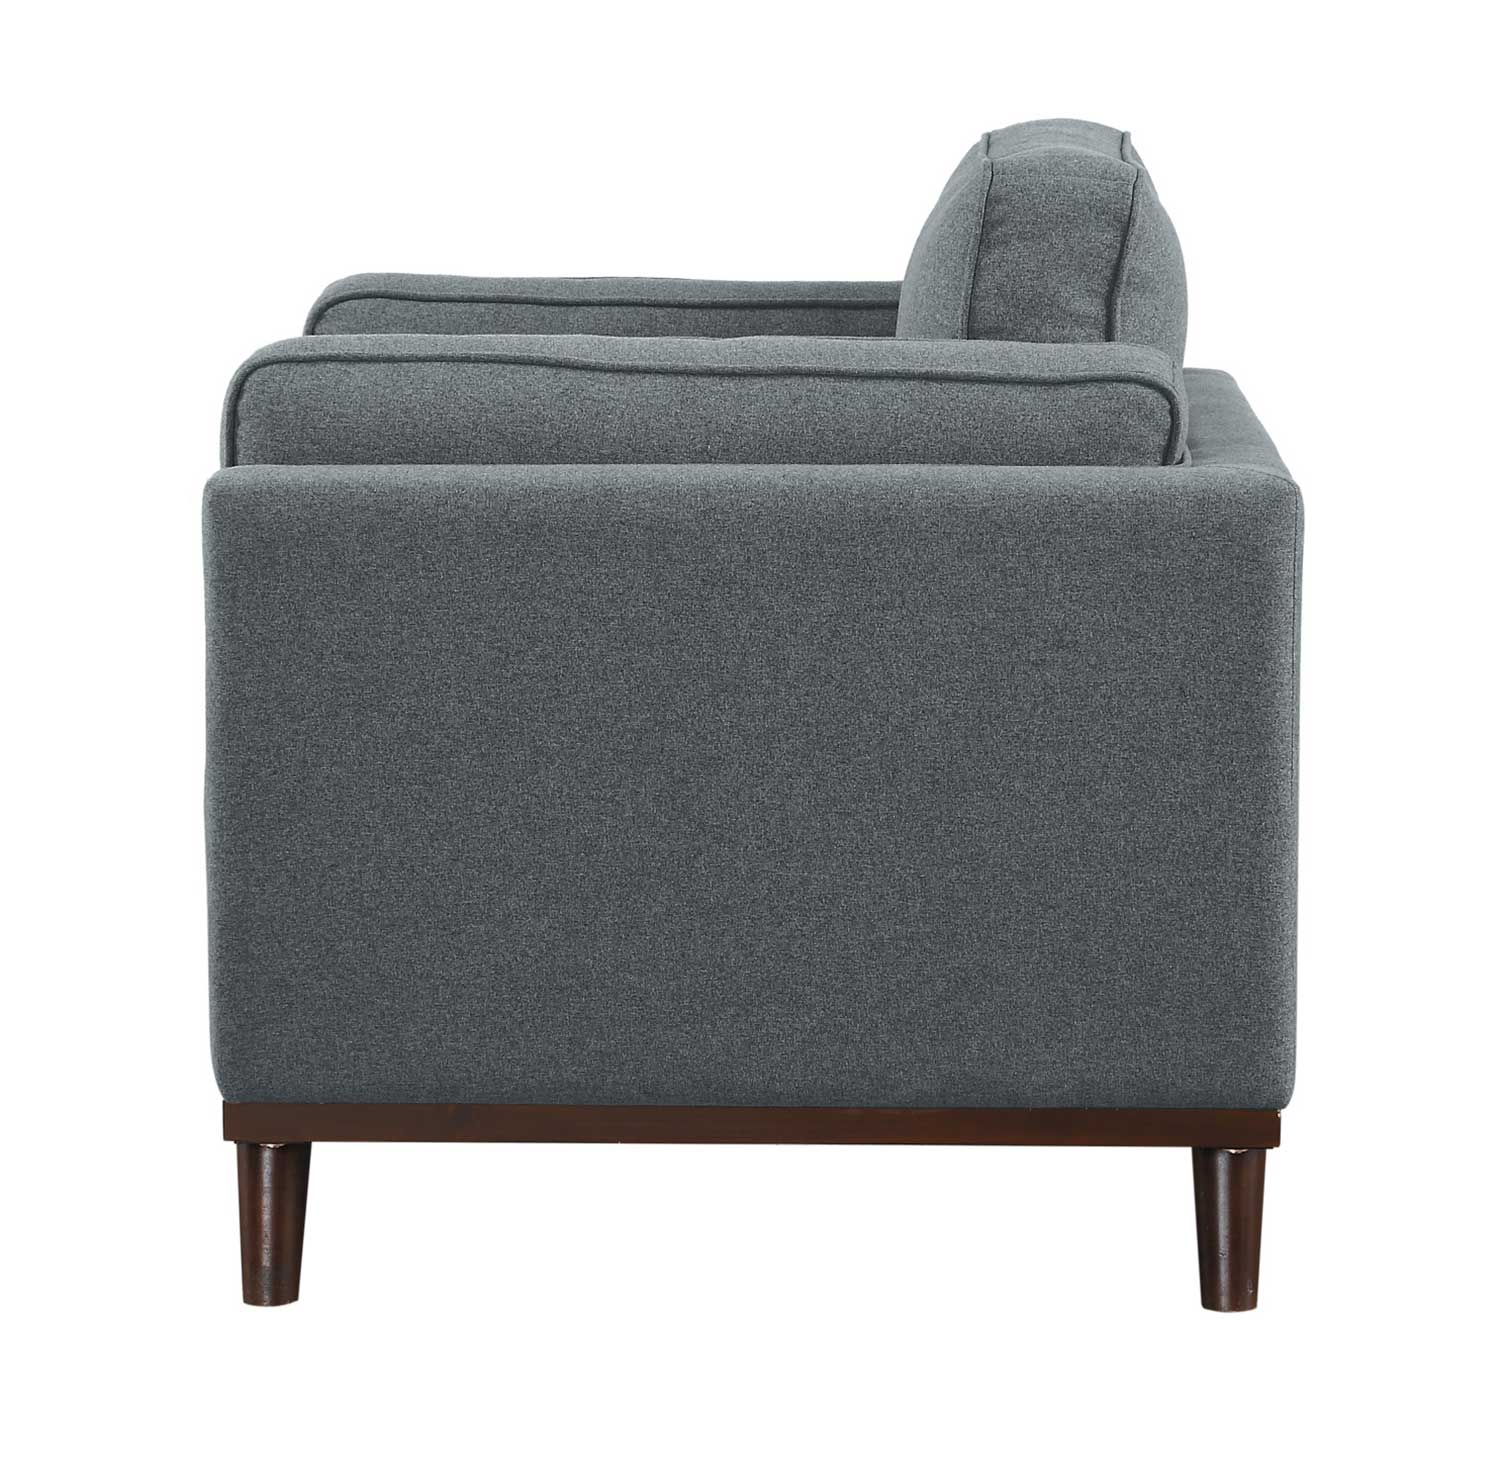 Homelegance Bedos Chair - Gray